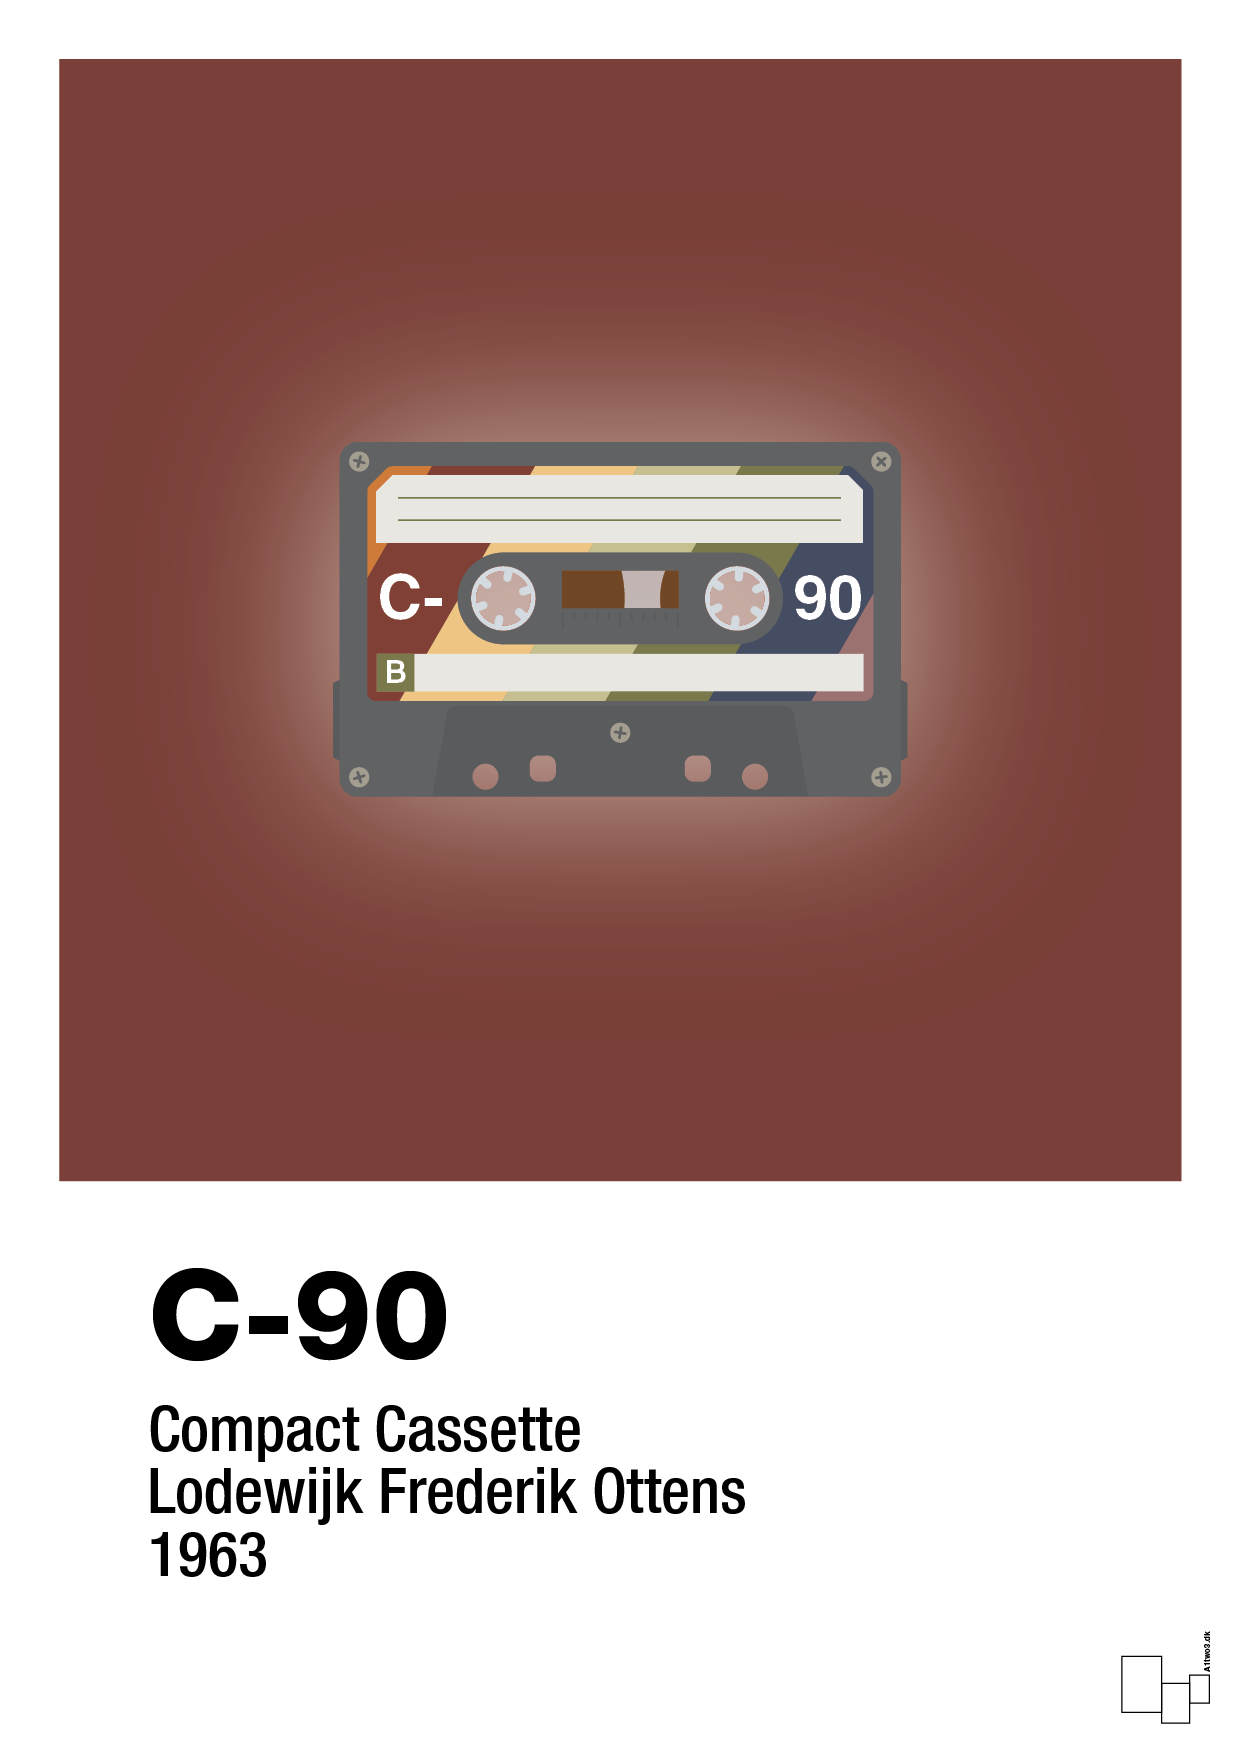 kassettebånd c-90 - Plakat med Grafik i Red Pepper